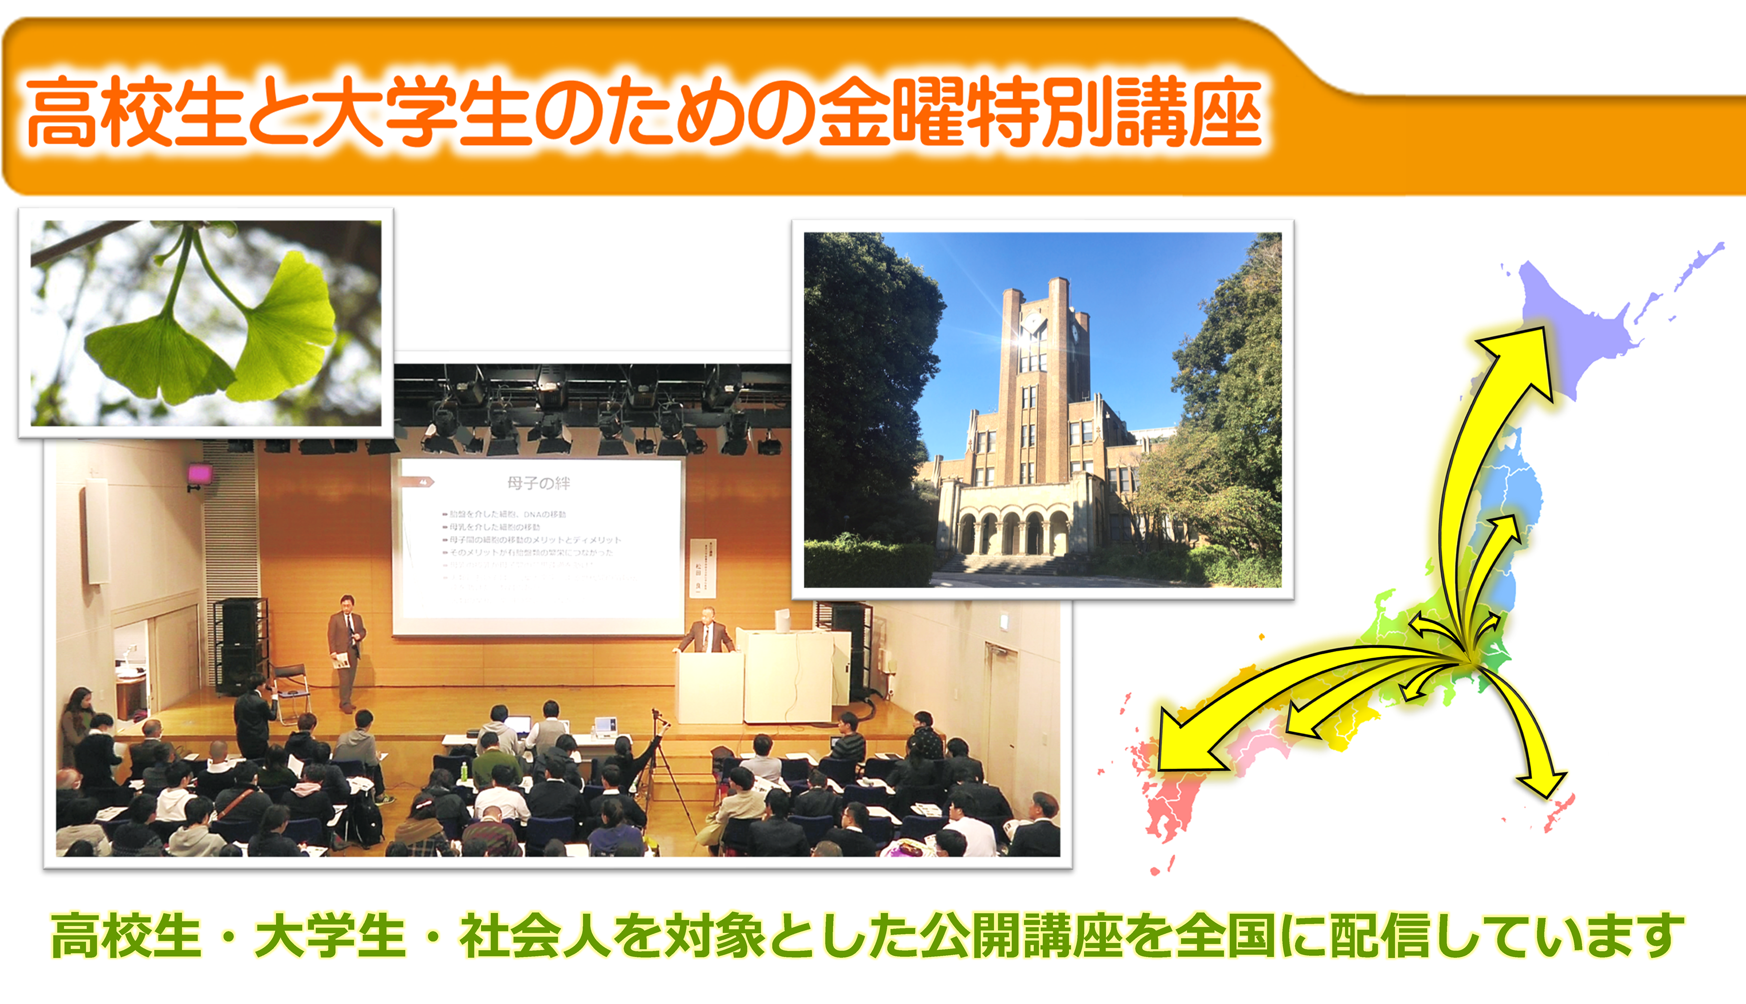 東京大学教養学部主催「高校生と大学生のための金曜特別講座」の様子